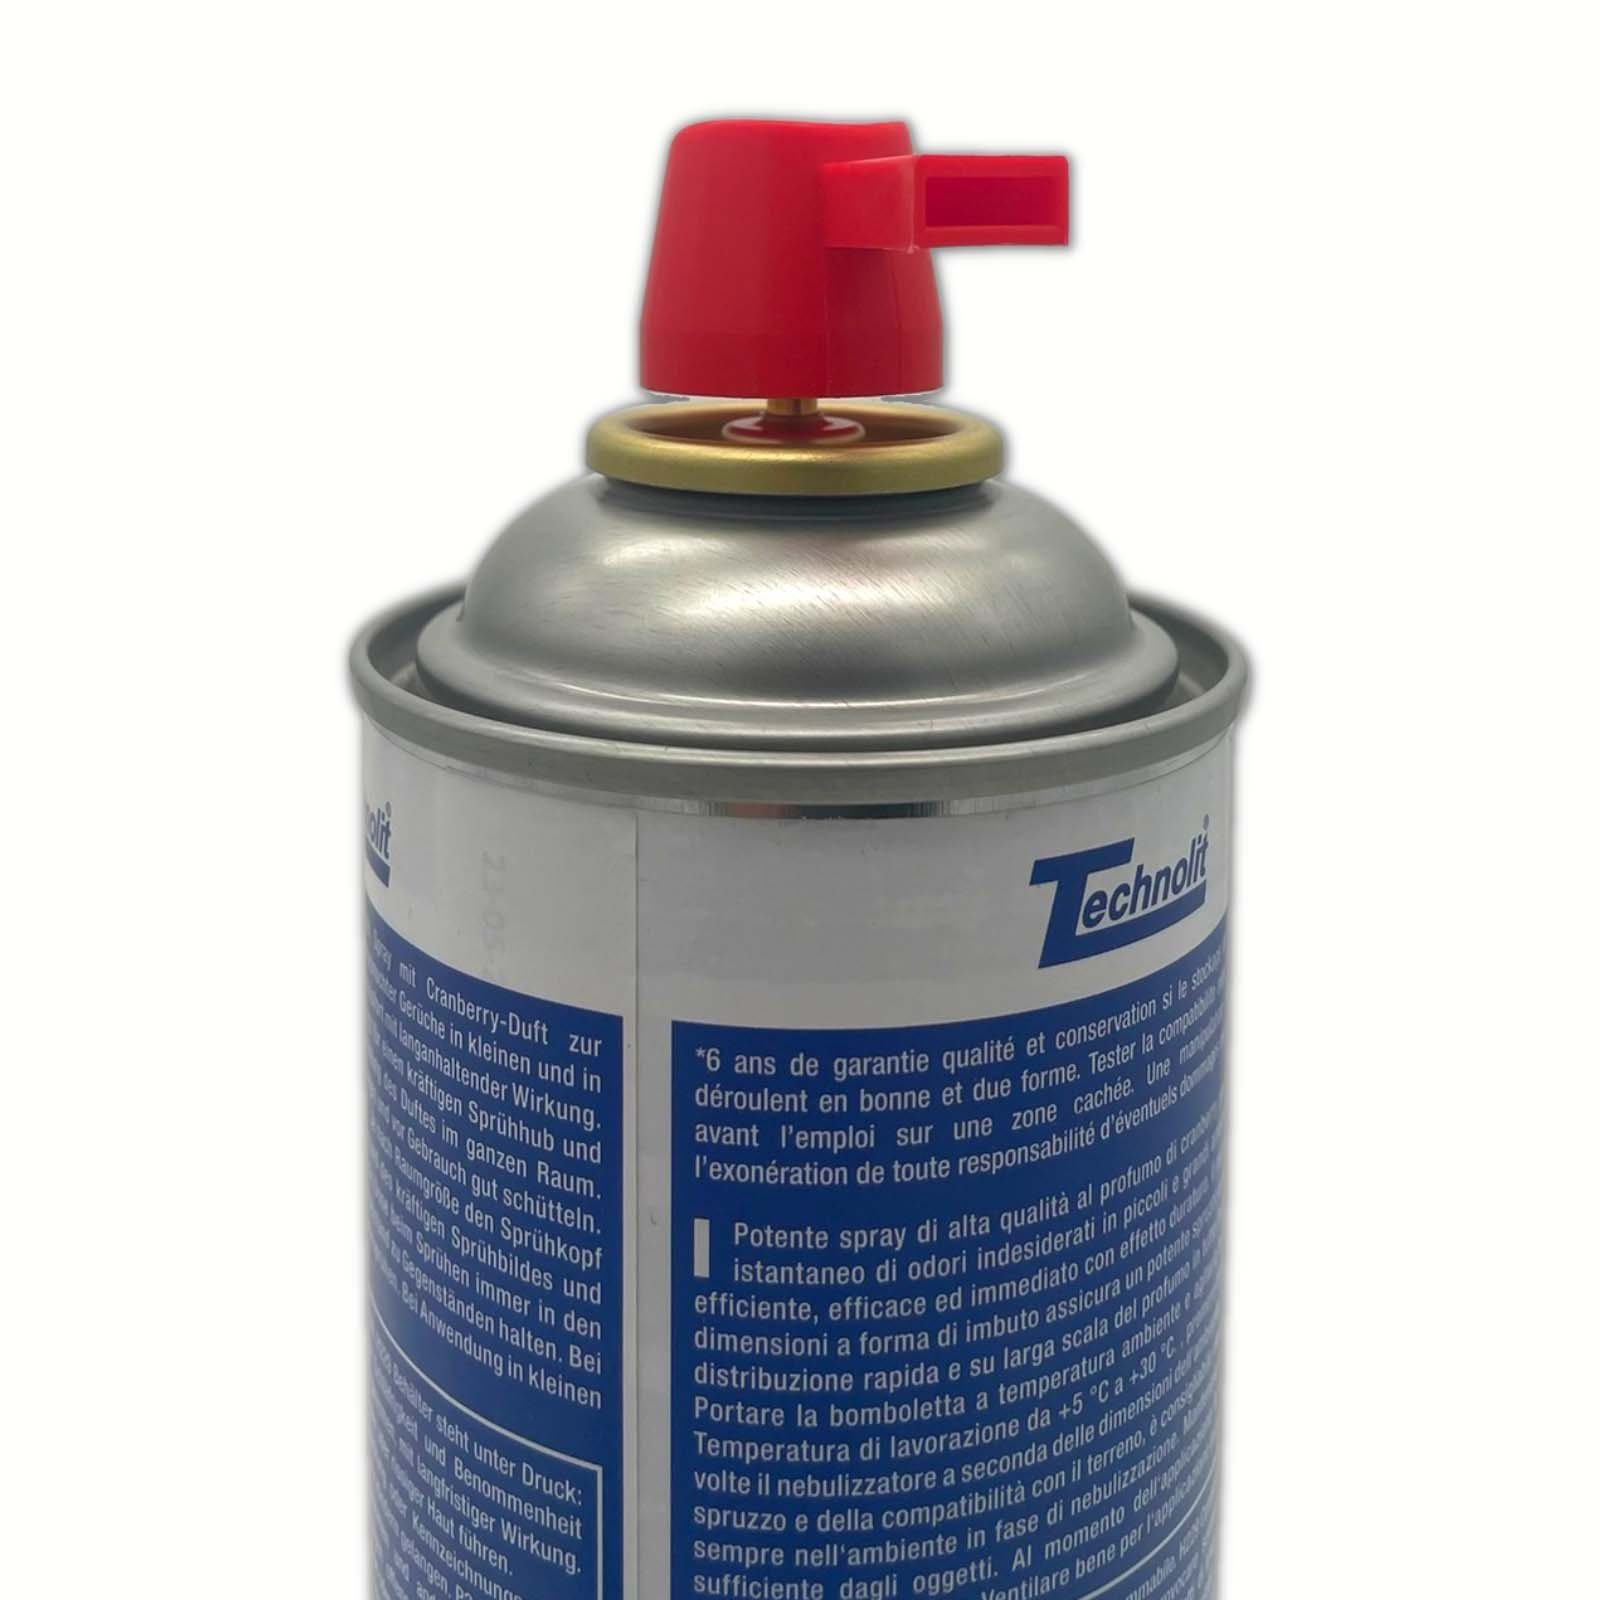 ml TECHNOLIT® Universalreiniger Duft-Spray 600 Power